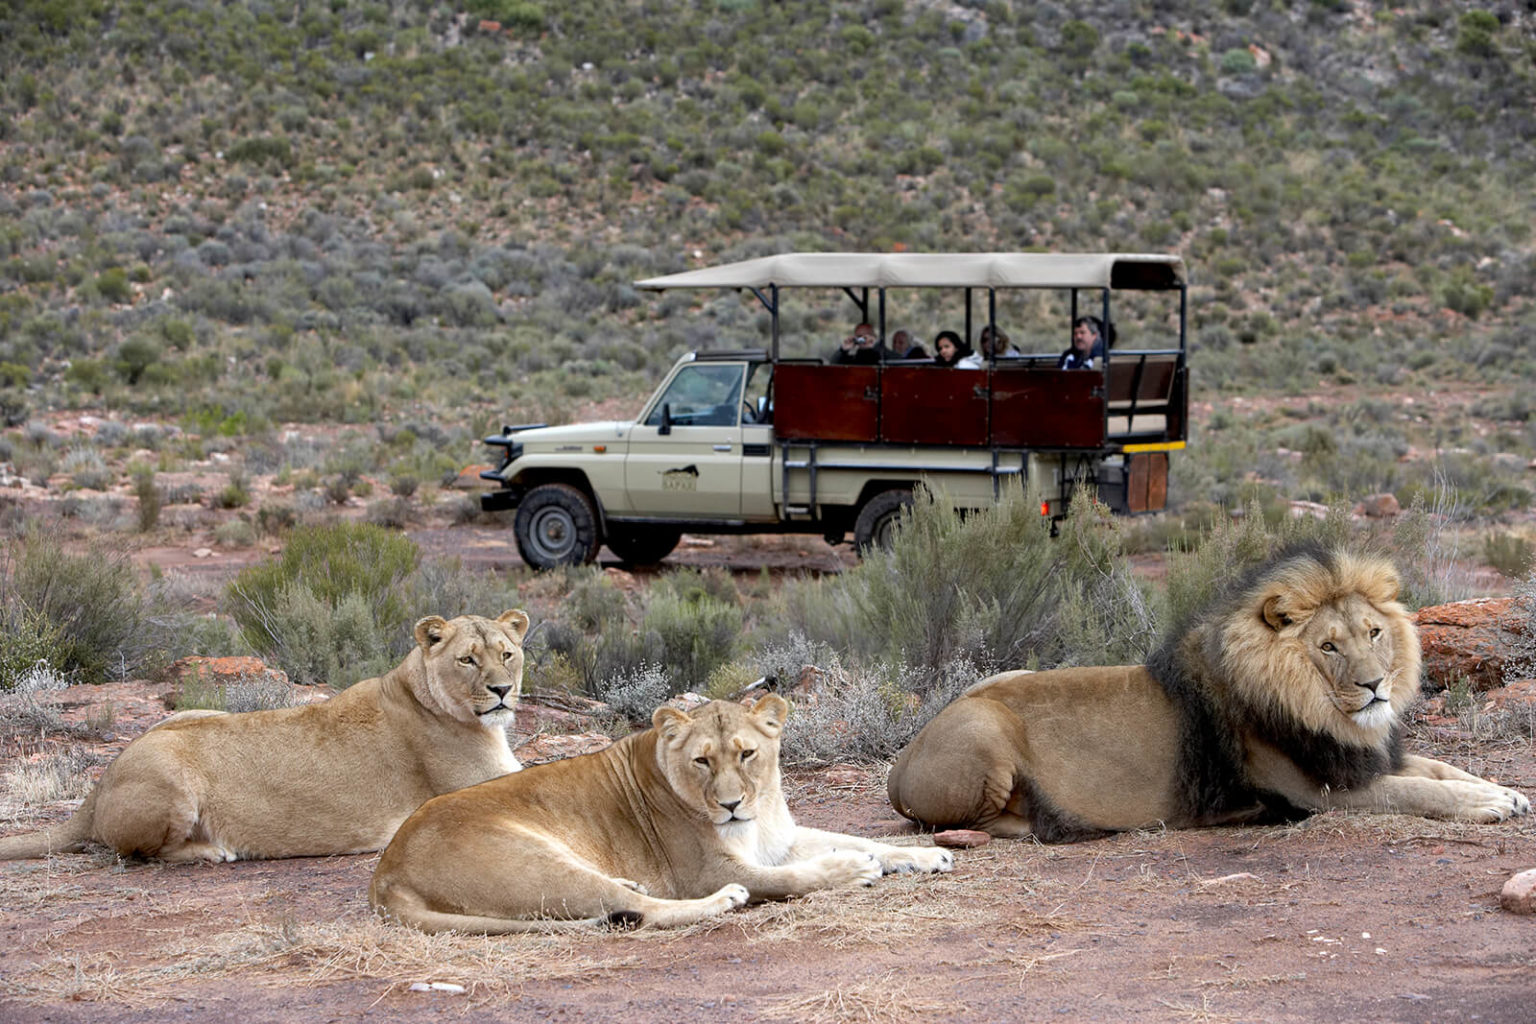 Cape Town Safari Tour At Big 5 Game Reserve Safaris Down South